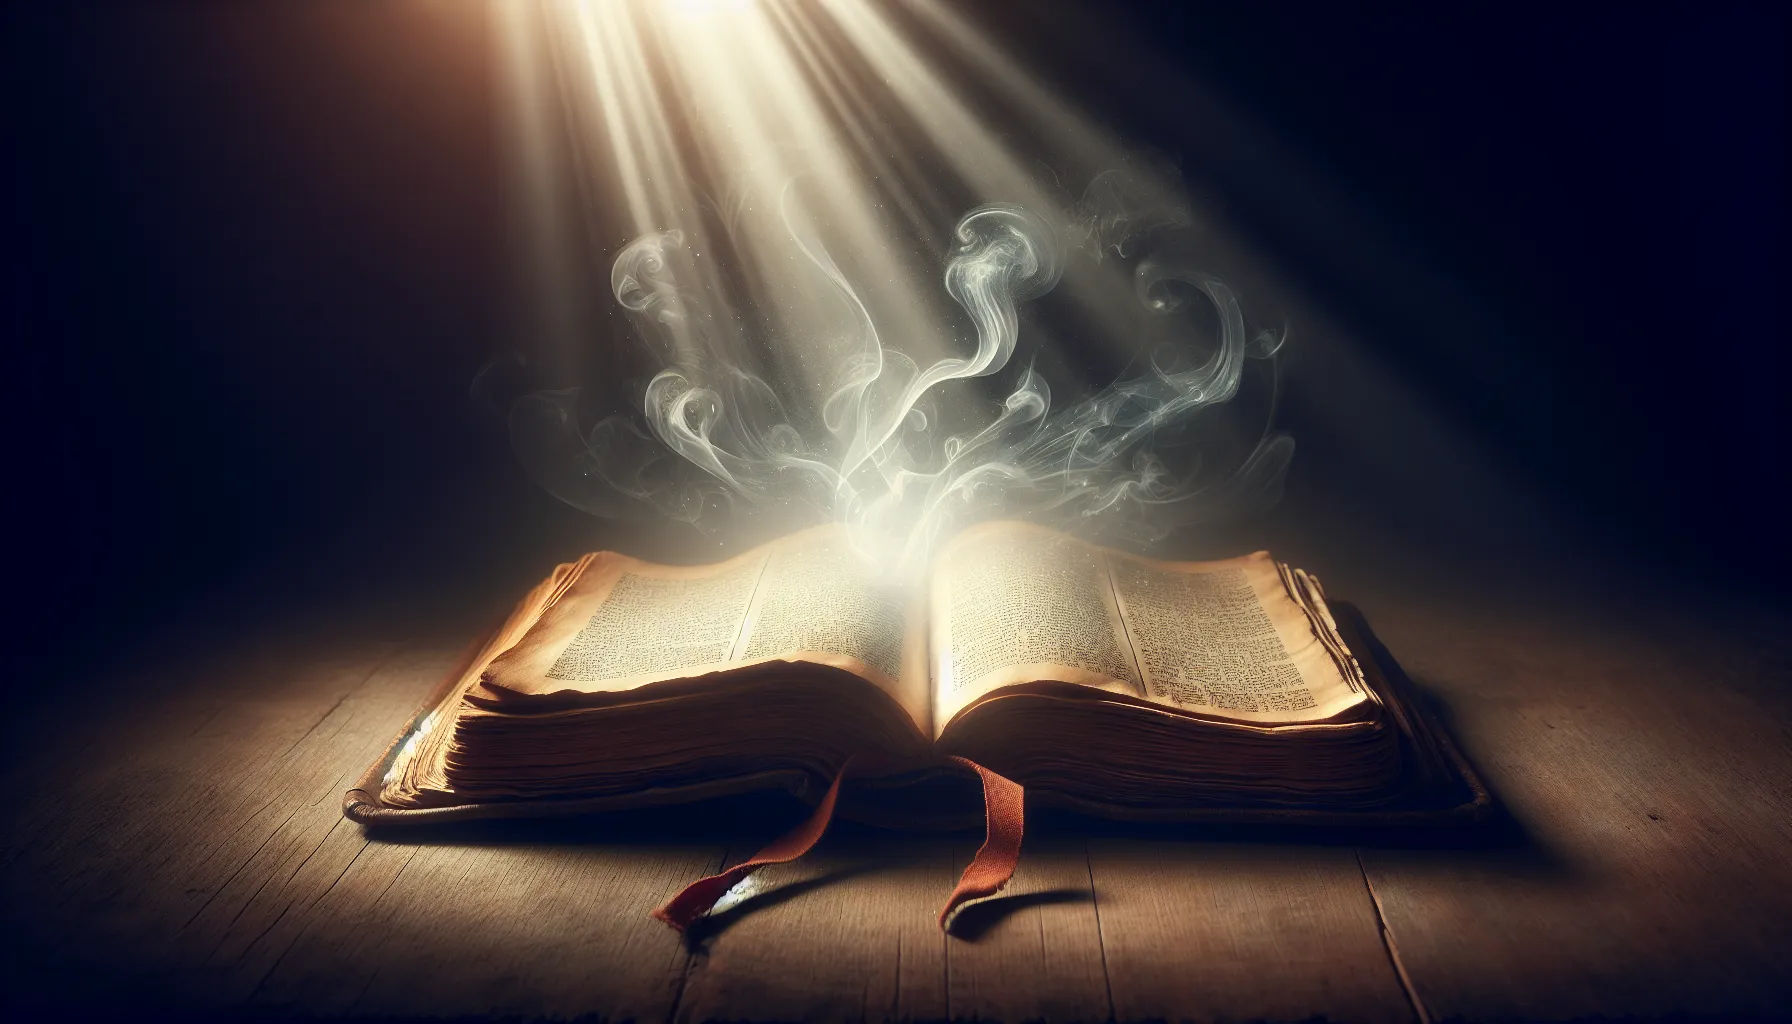 Imagen de un libro antiguo abierto con una luz tenue que ilumina las páginas